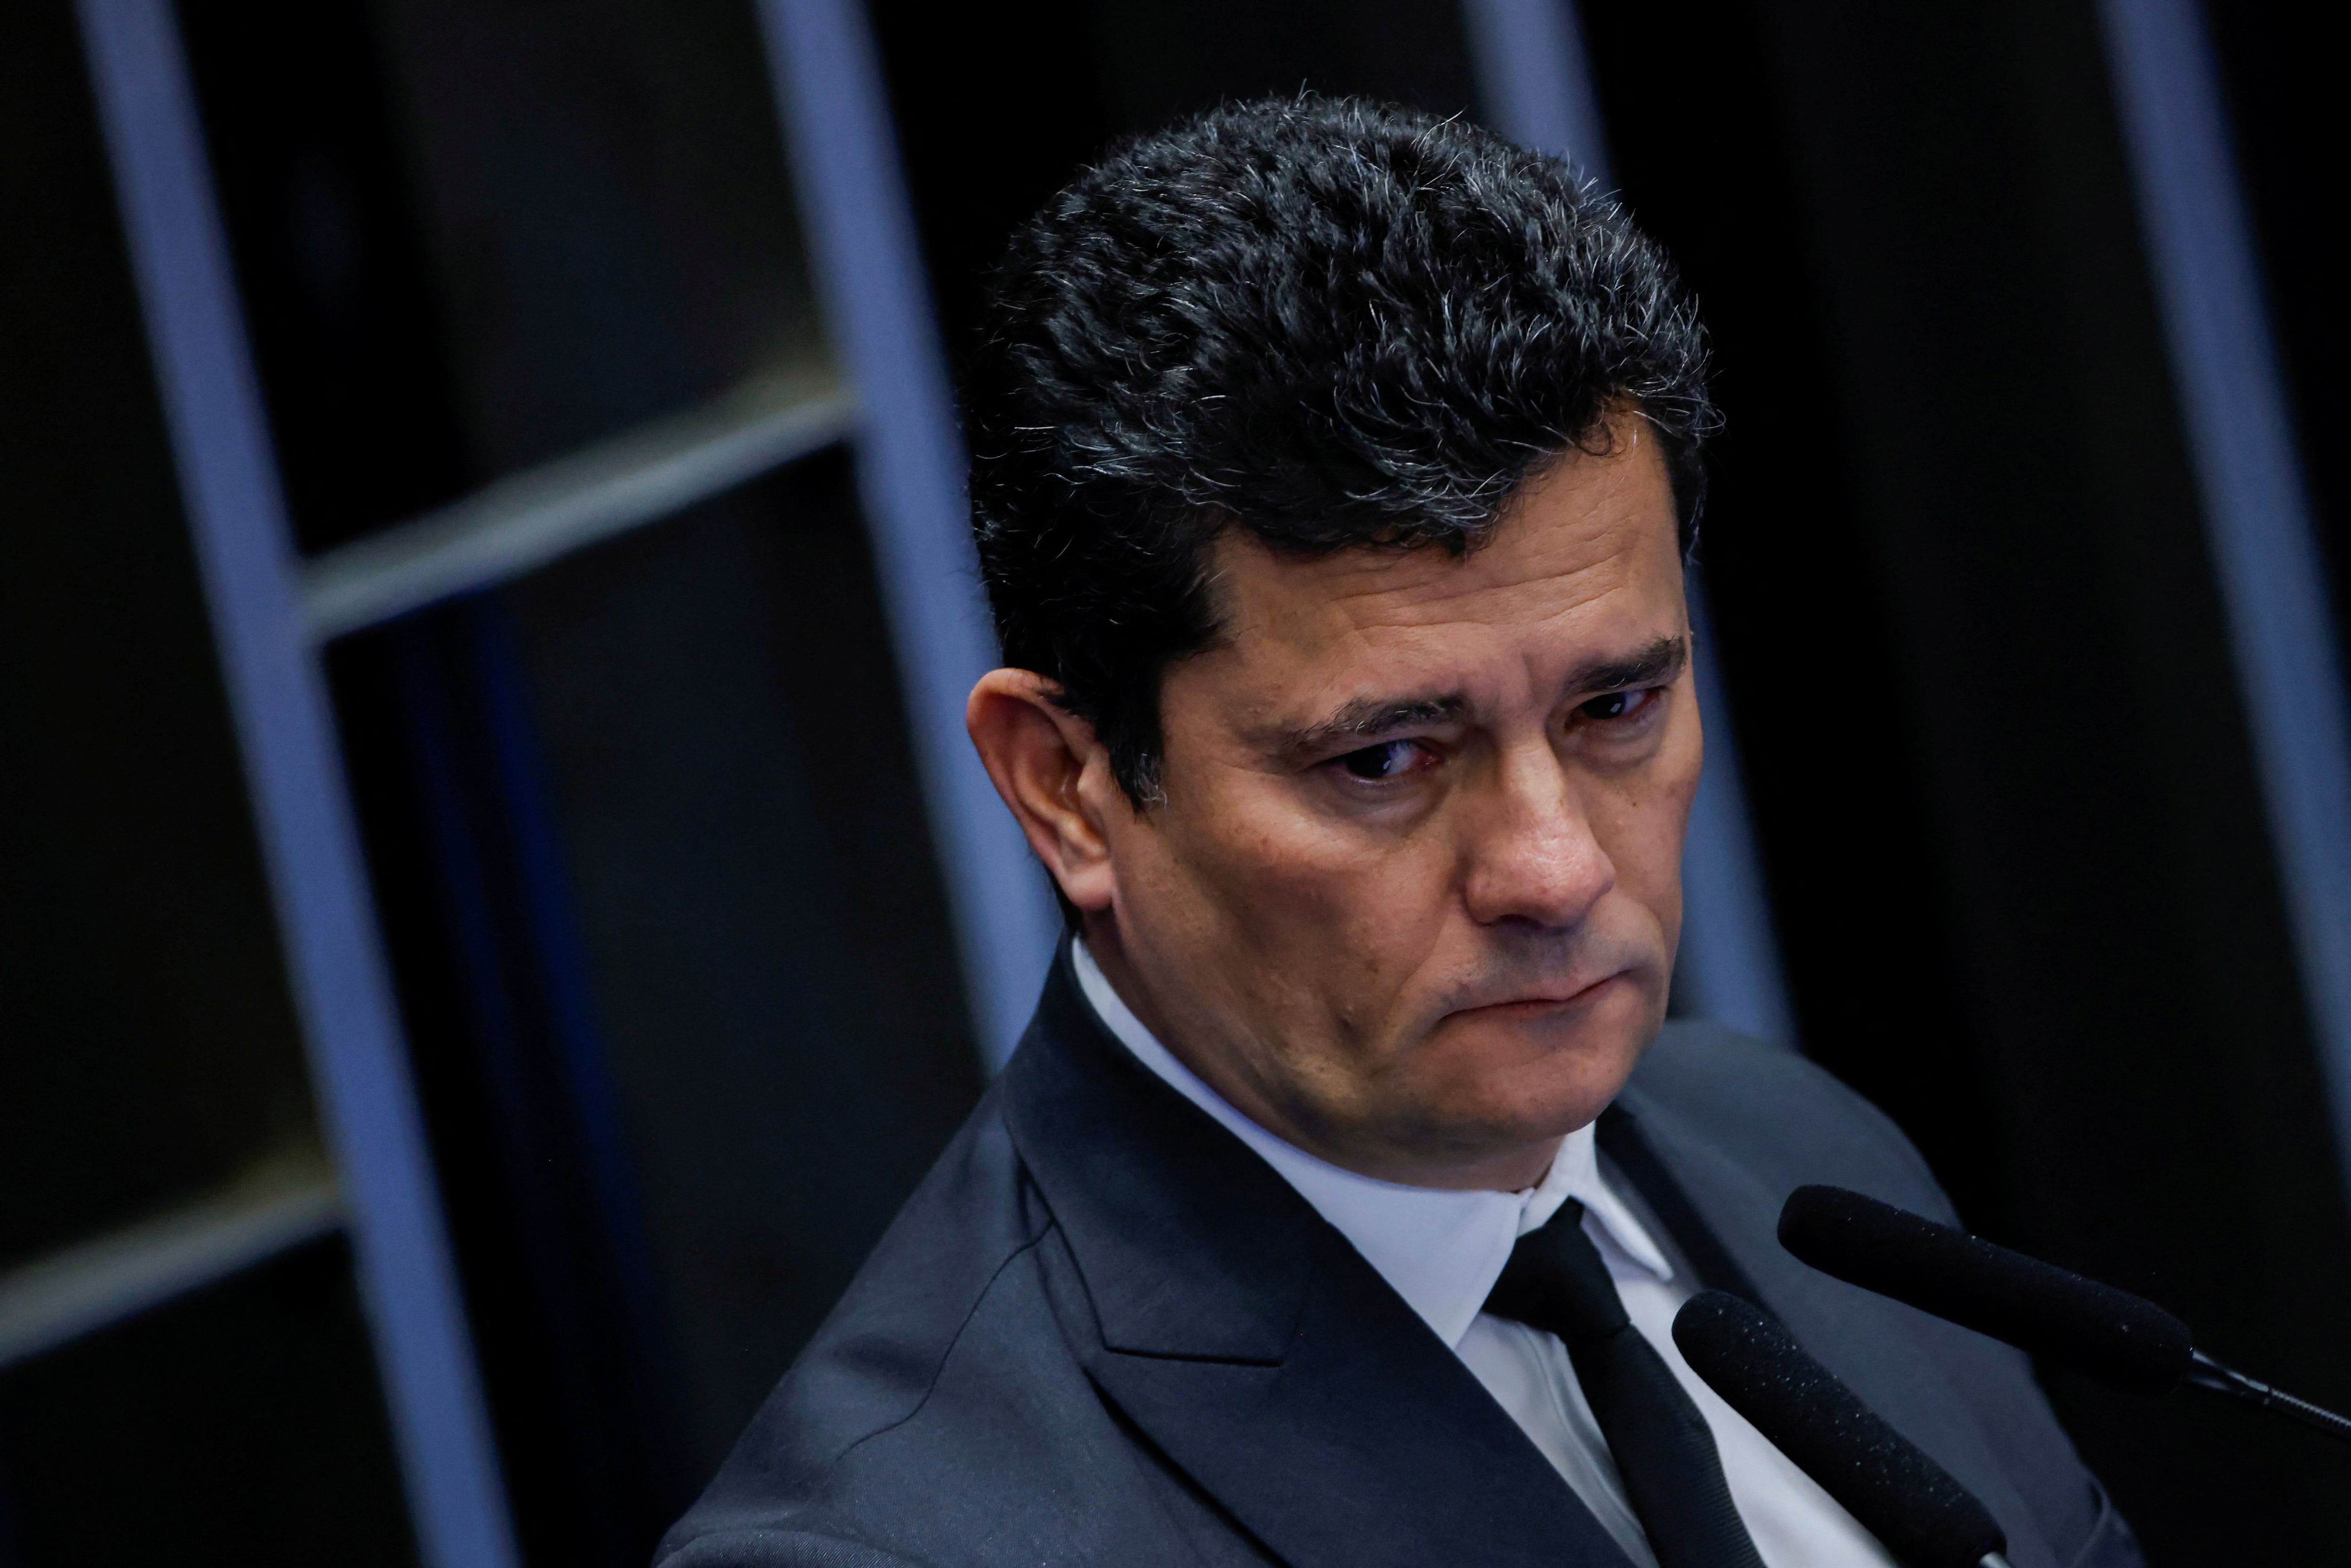 Sergio Moro, hoy senador, había destapado por primera vez la caja de Pandora de la corrupción en el país (REUTERS/Adriano Machado/Archivo)